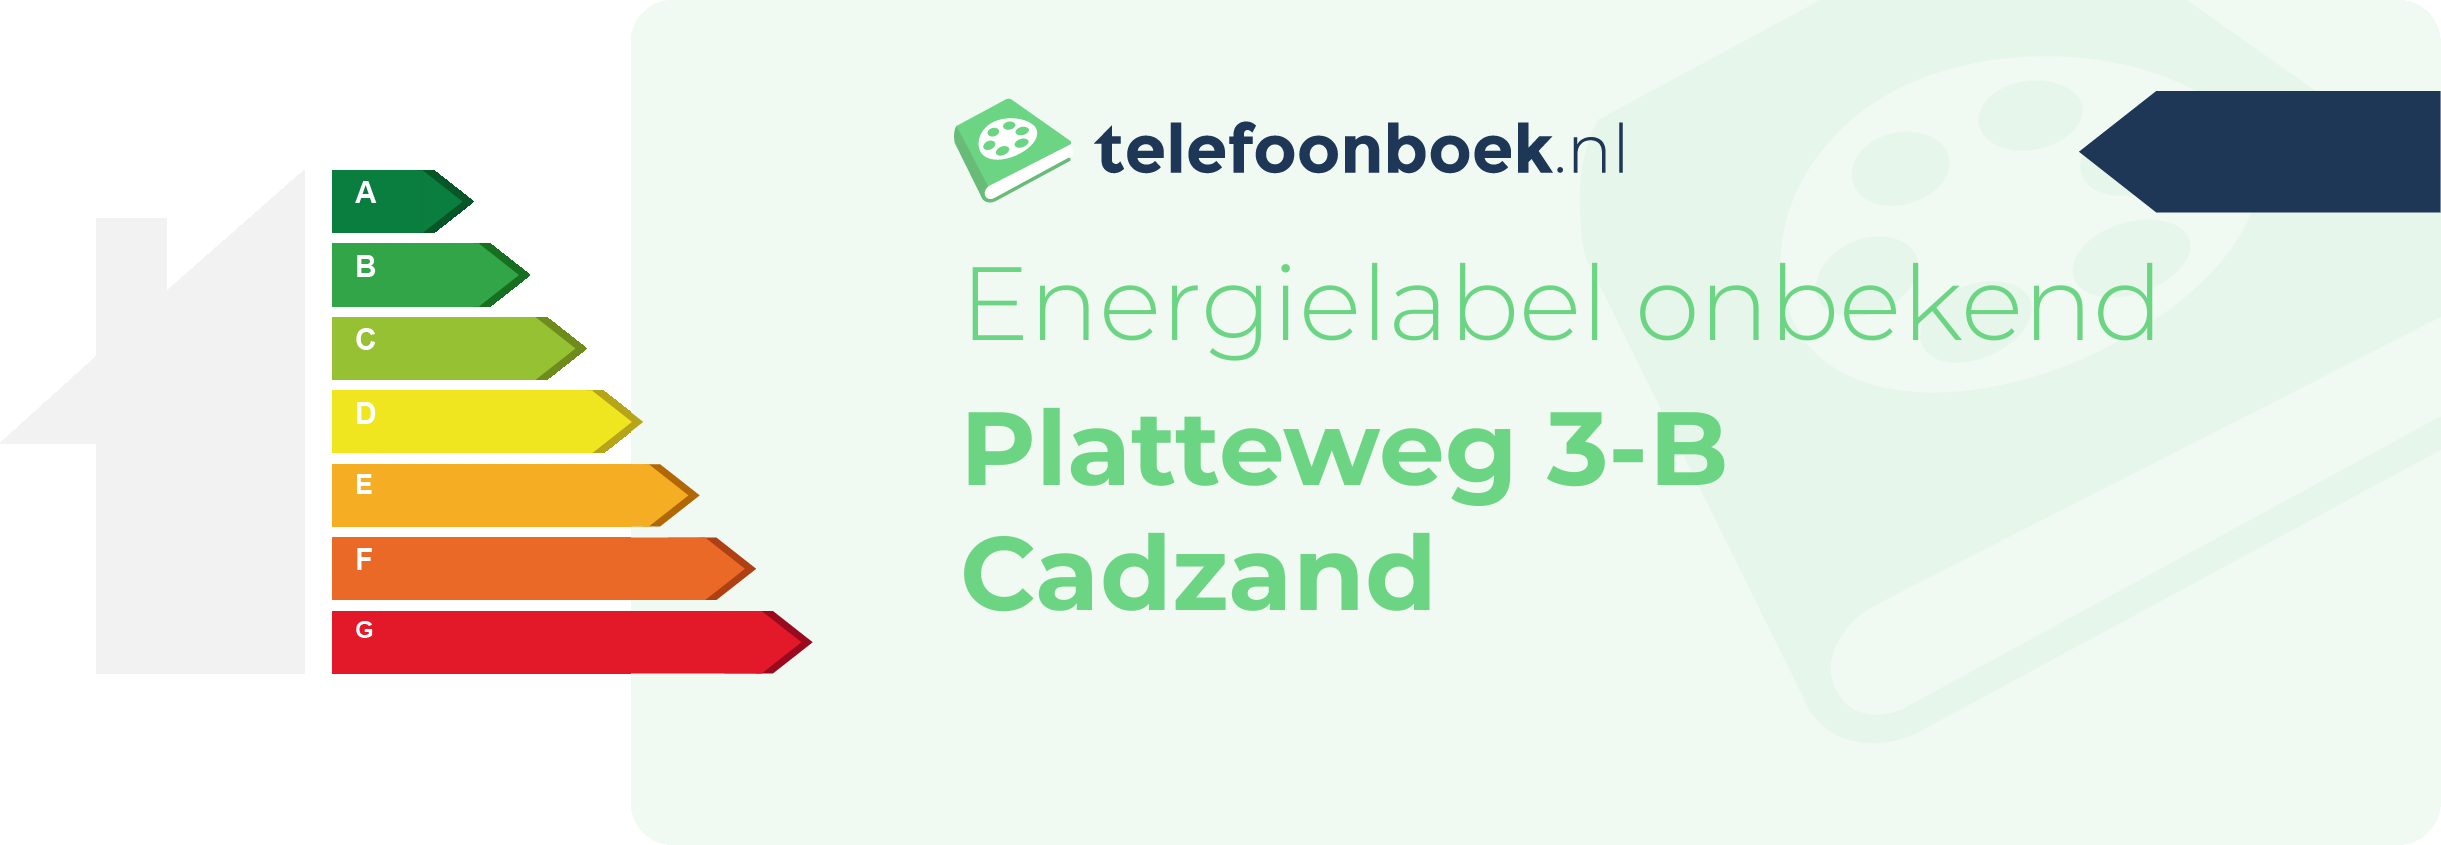 Energielabel Platteweg 3-B Cadzand